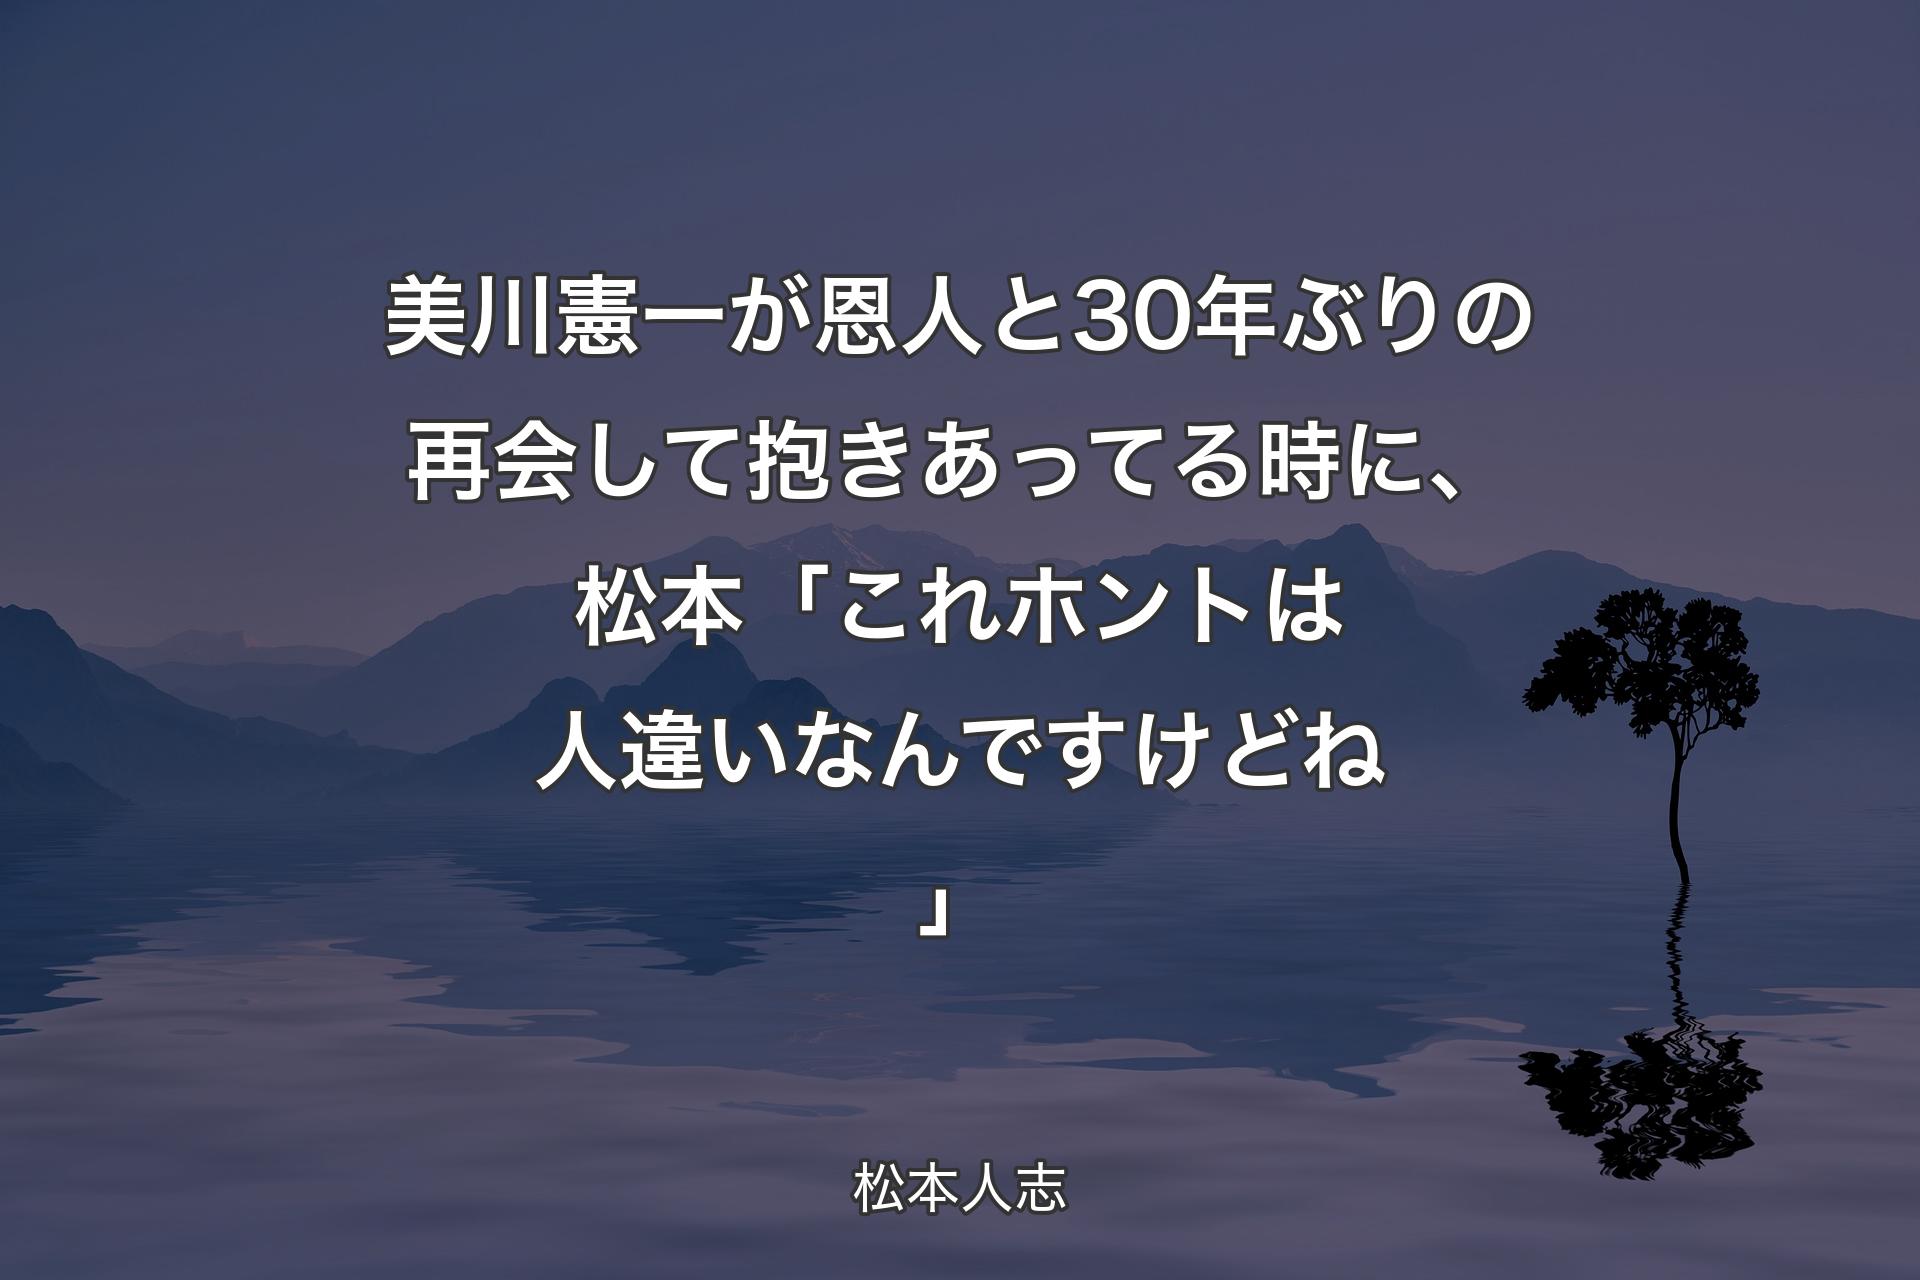 【背景4】美川憲一が恩人と30年ぶりの再会して抱きあってる時に、松本「これホントは人違いなんですけどね」 - 松本人志